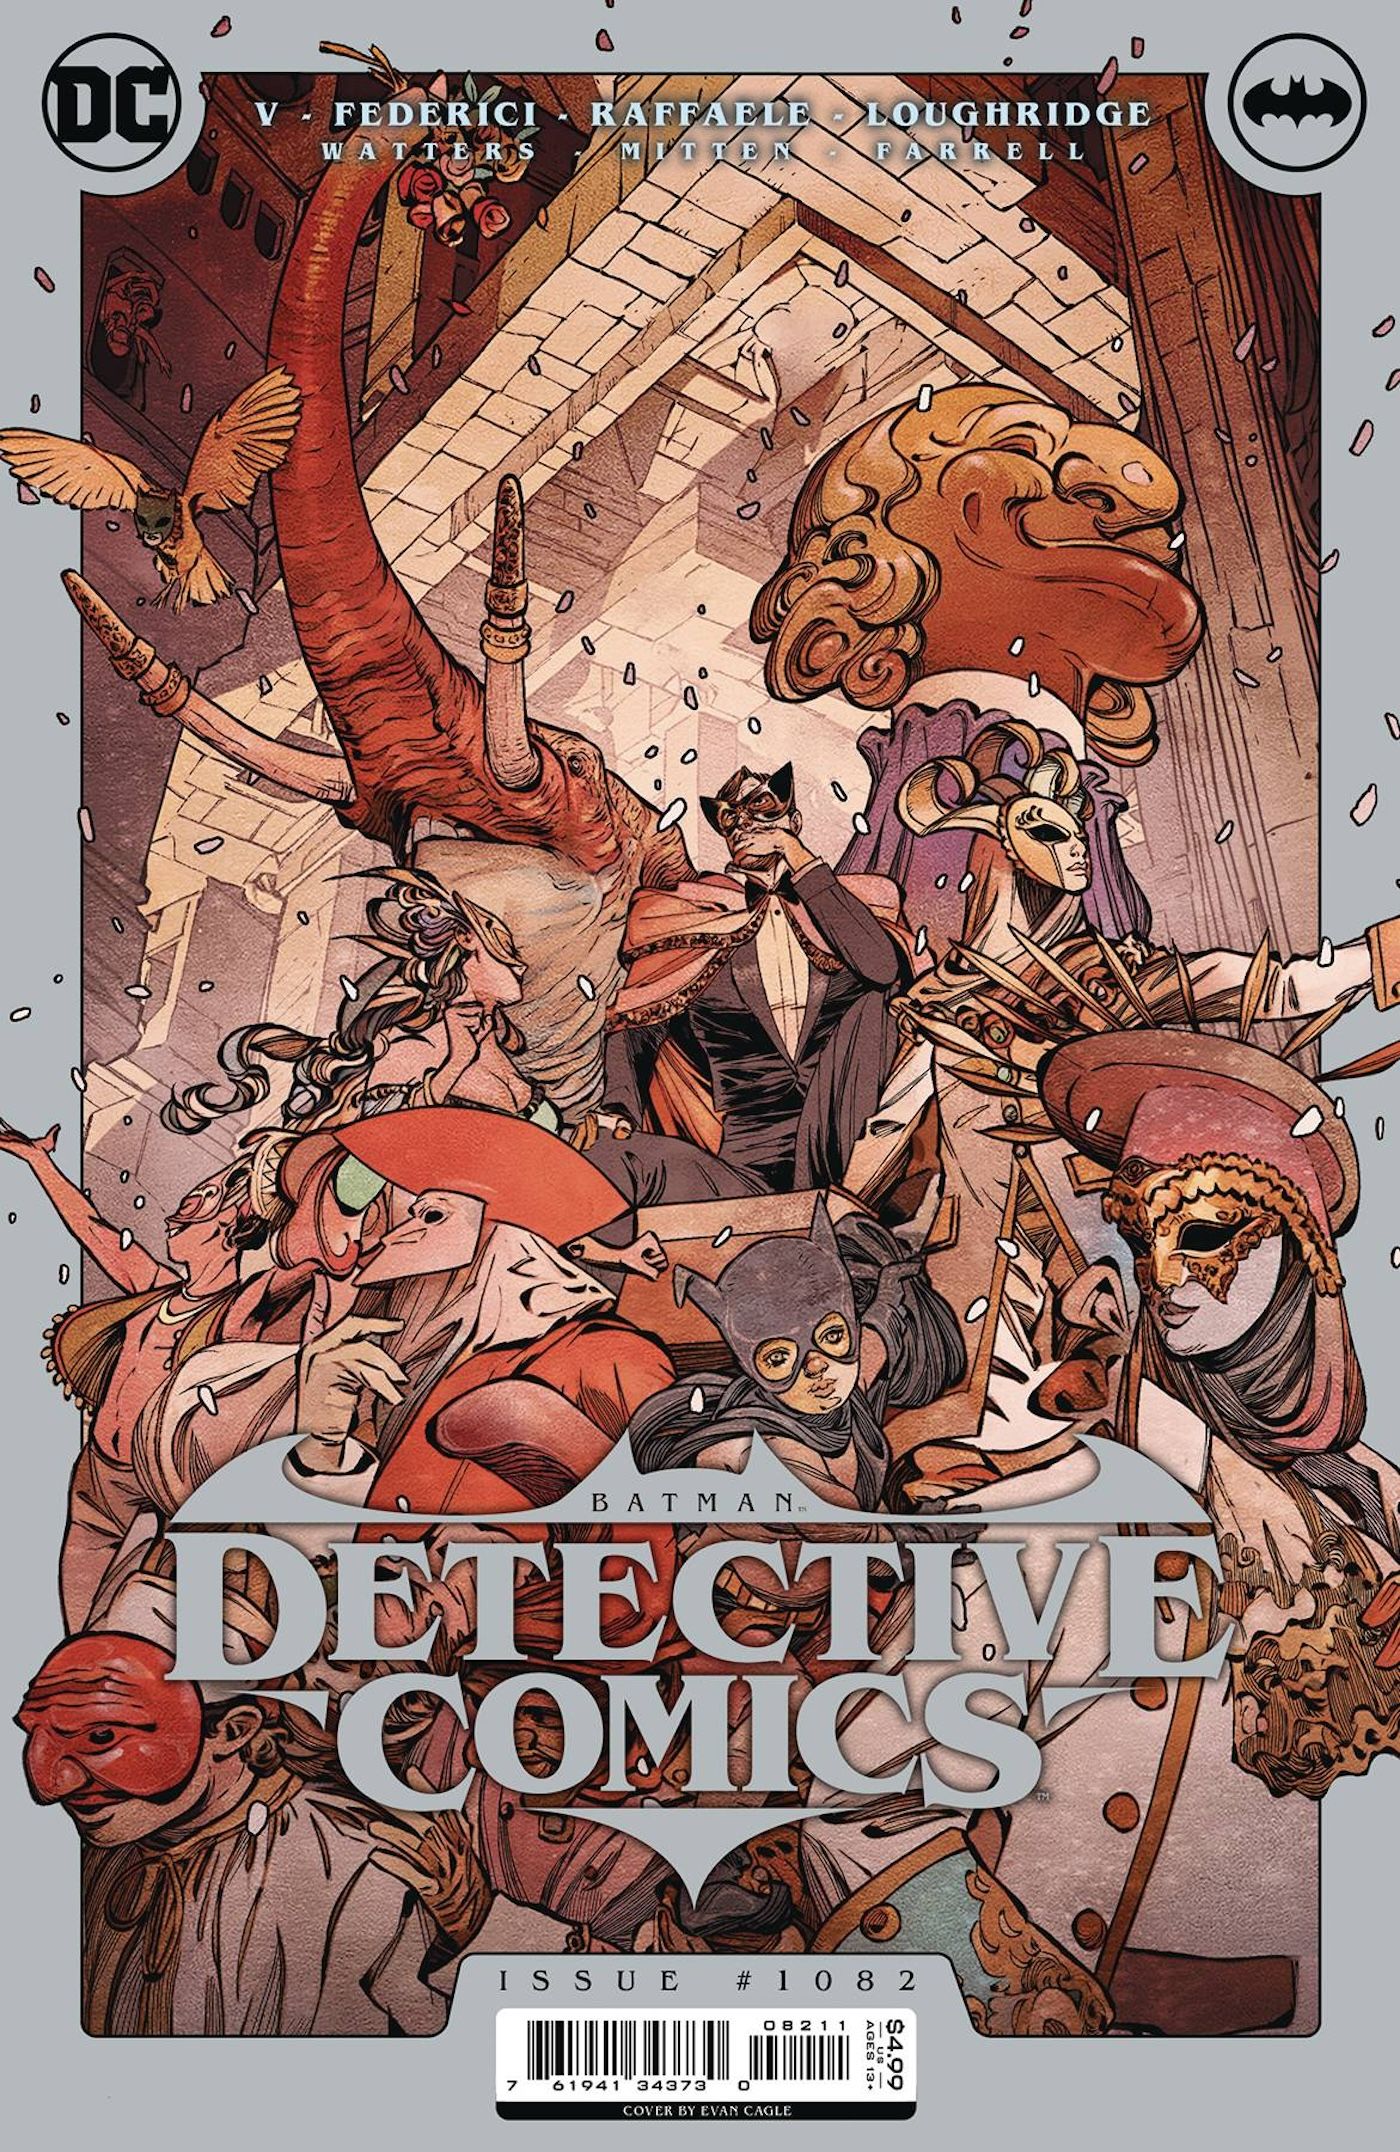 Capa principal da Detective Comics 1082: Doutor Hurt em uma multidão de personagens mascarados.